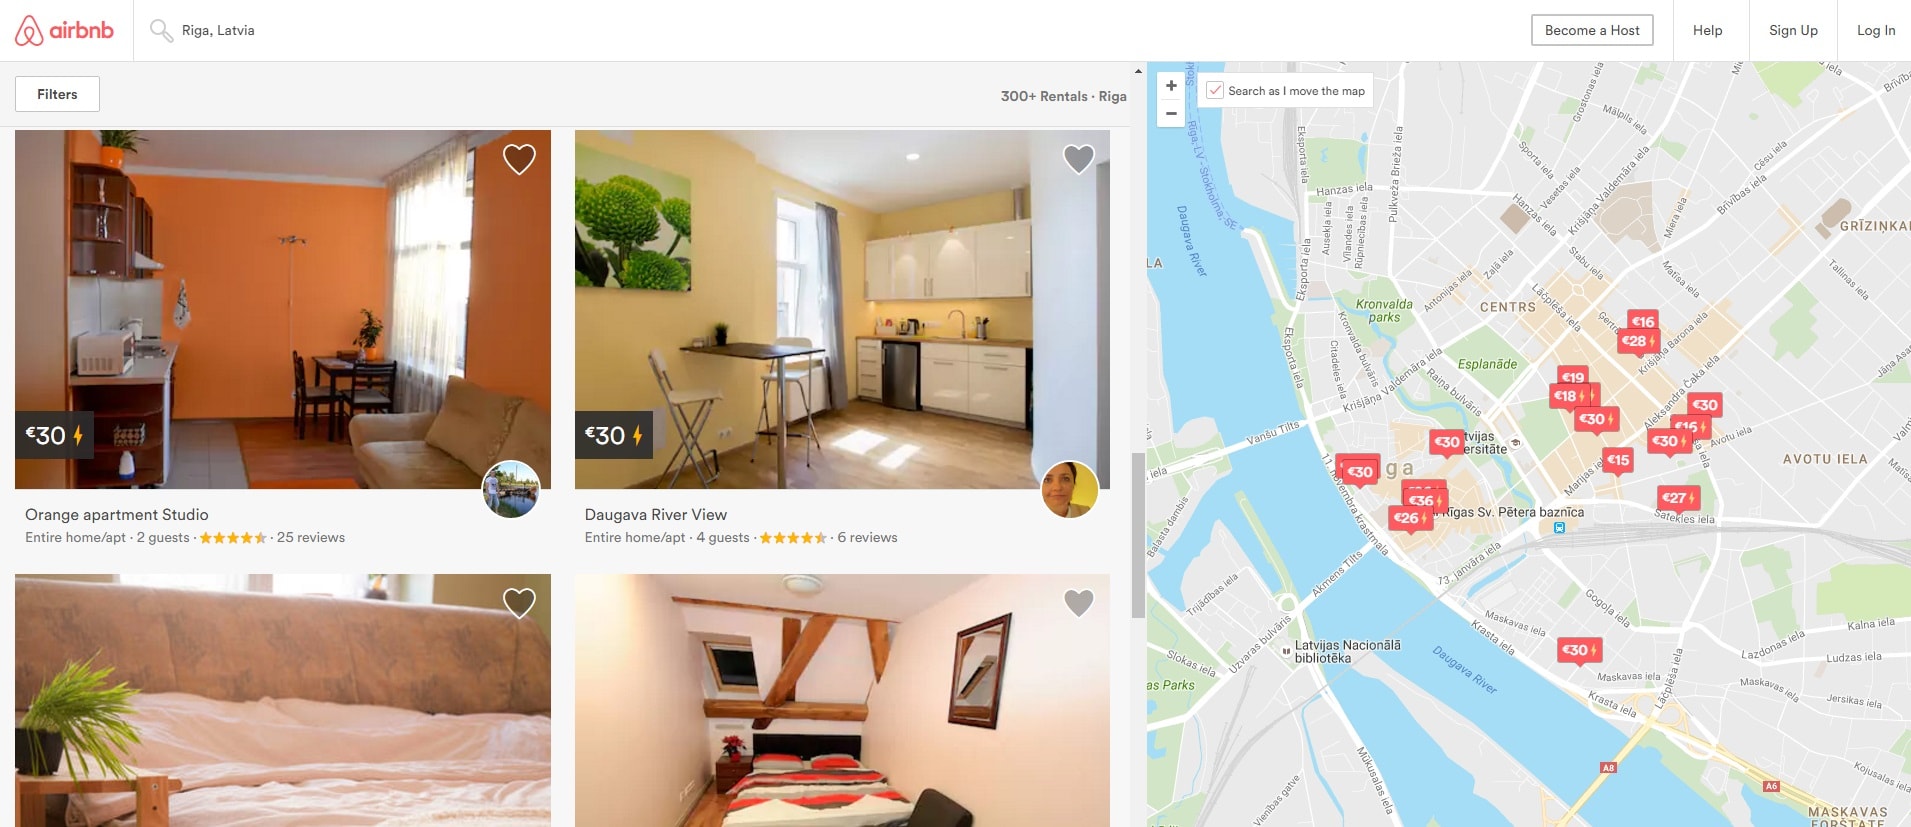 Airbnb mājaslapa